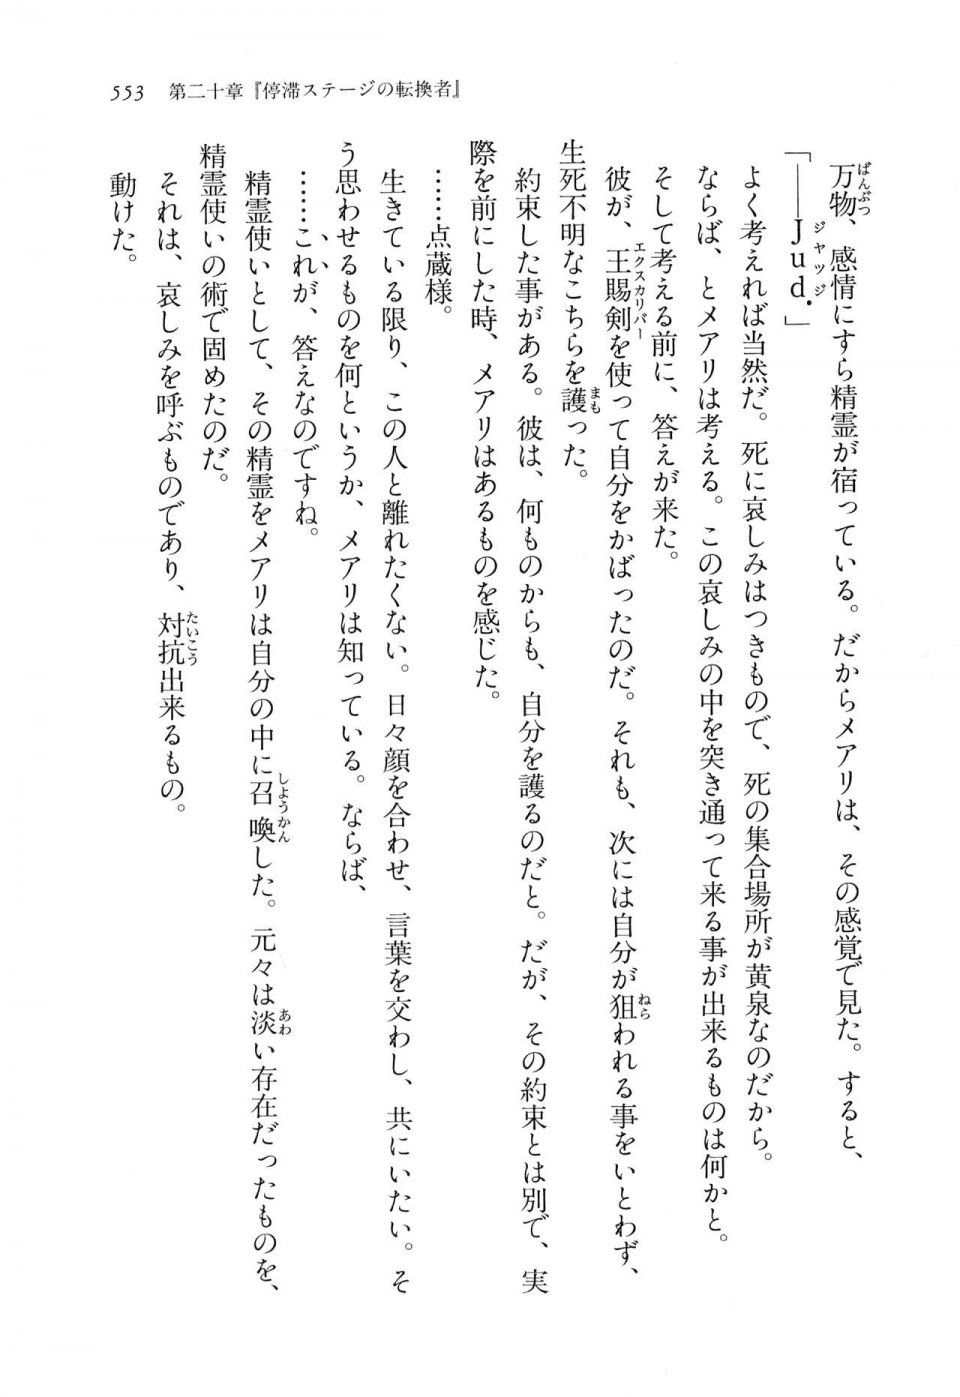 Kyoukai Senjou no Horizon LN Vol 11(5A) - Photo #553